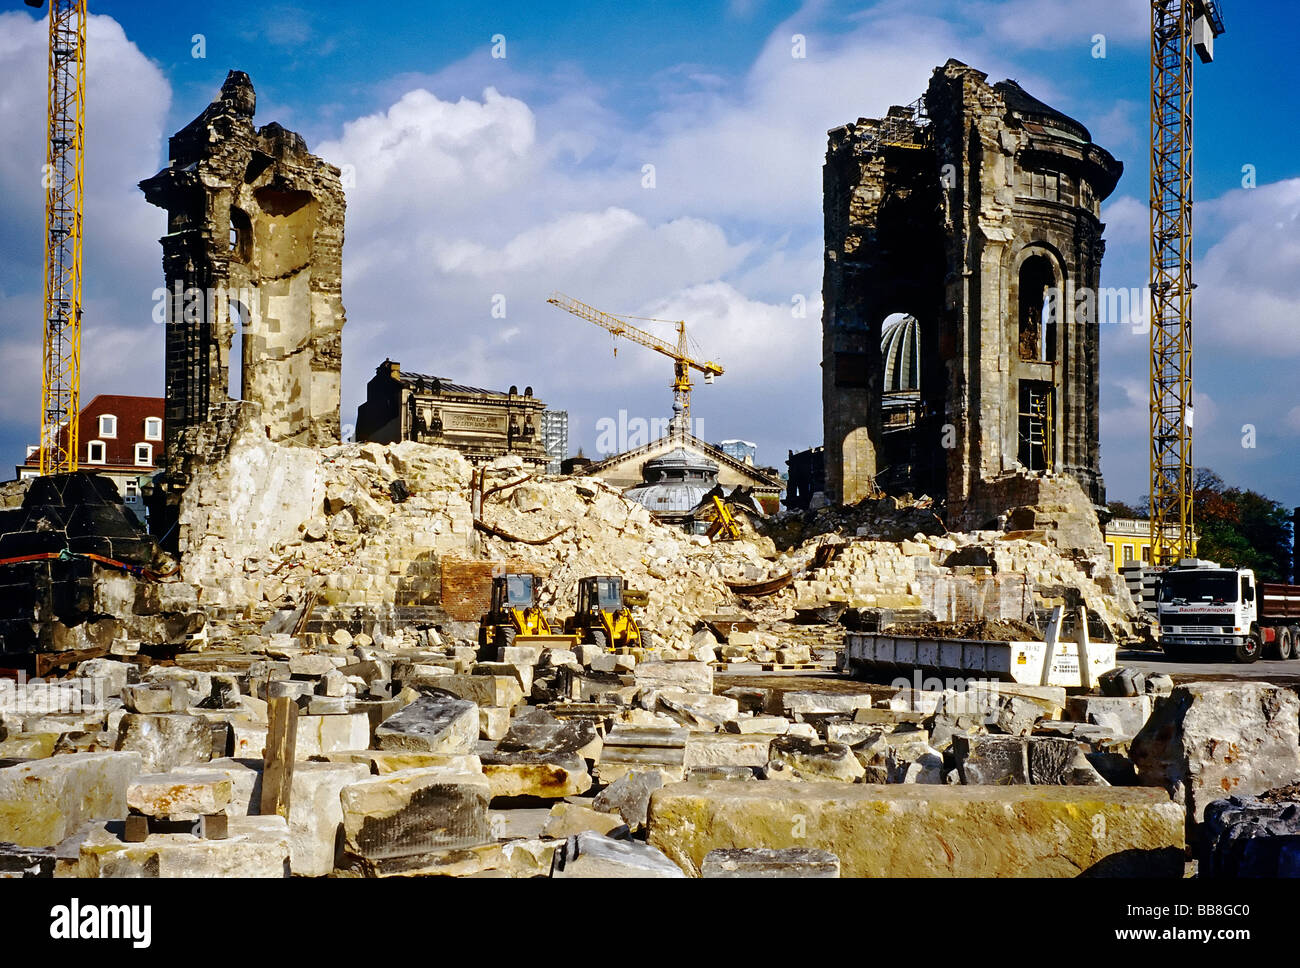 La rovina della Frauenkirche di Dresda, condizione in 1996, sito di smaltimento con i veicoli da cantiere, Dresda, Sassonia, Germania, Europa Foto Stock